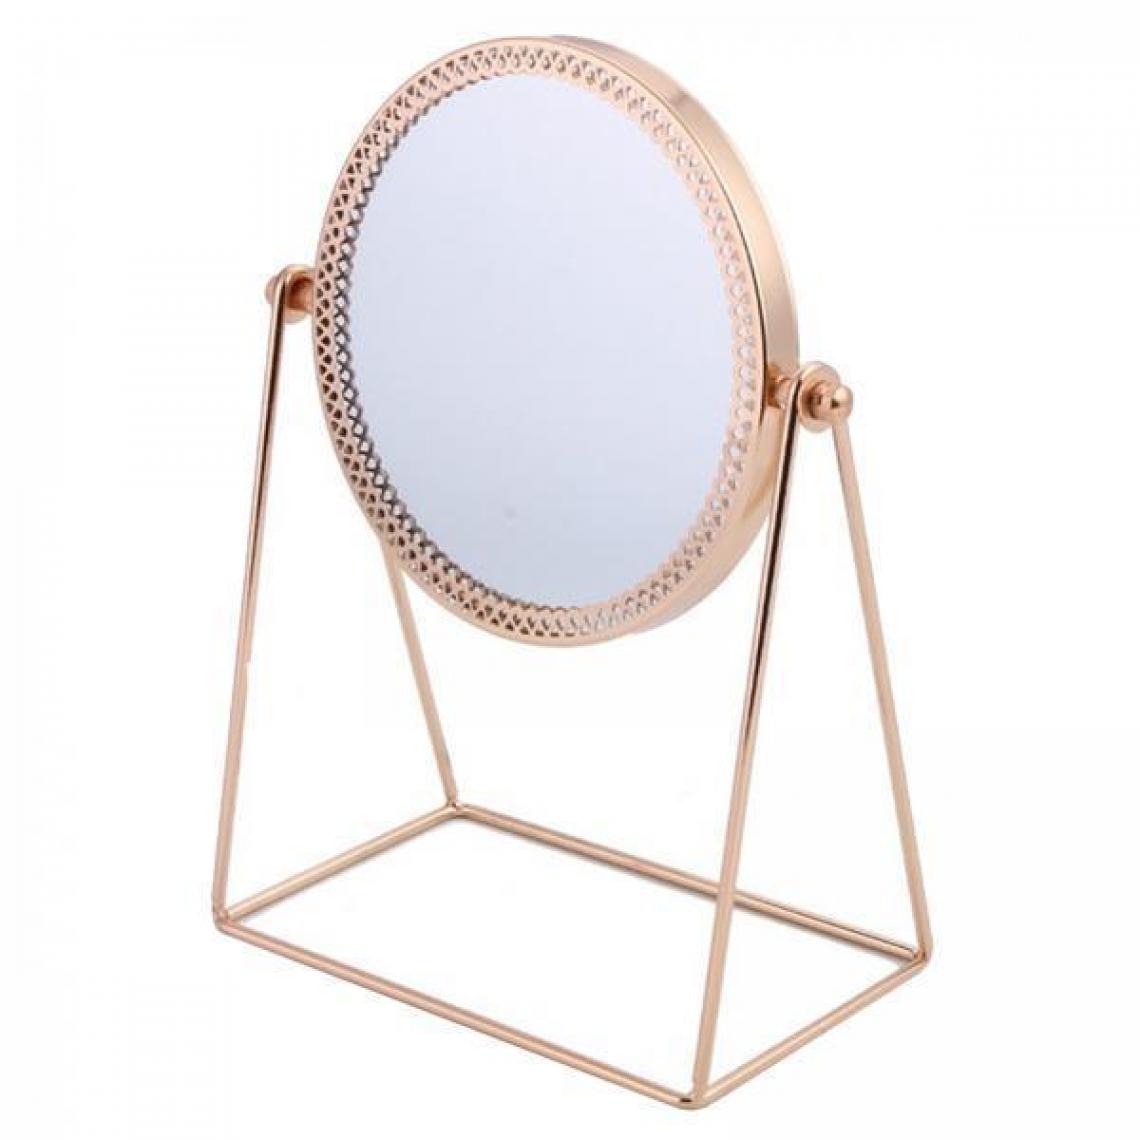 marque generique - Led miroir de maquillage make up miroir petit miroir - Miroir de salle de bain